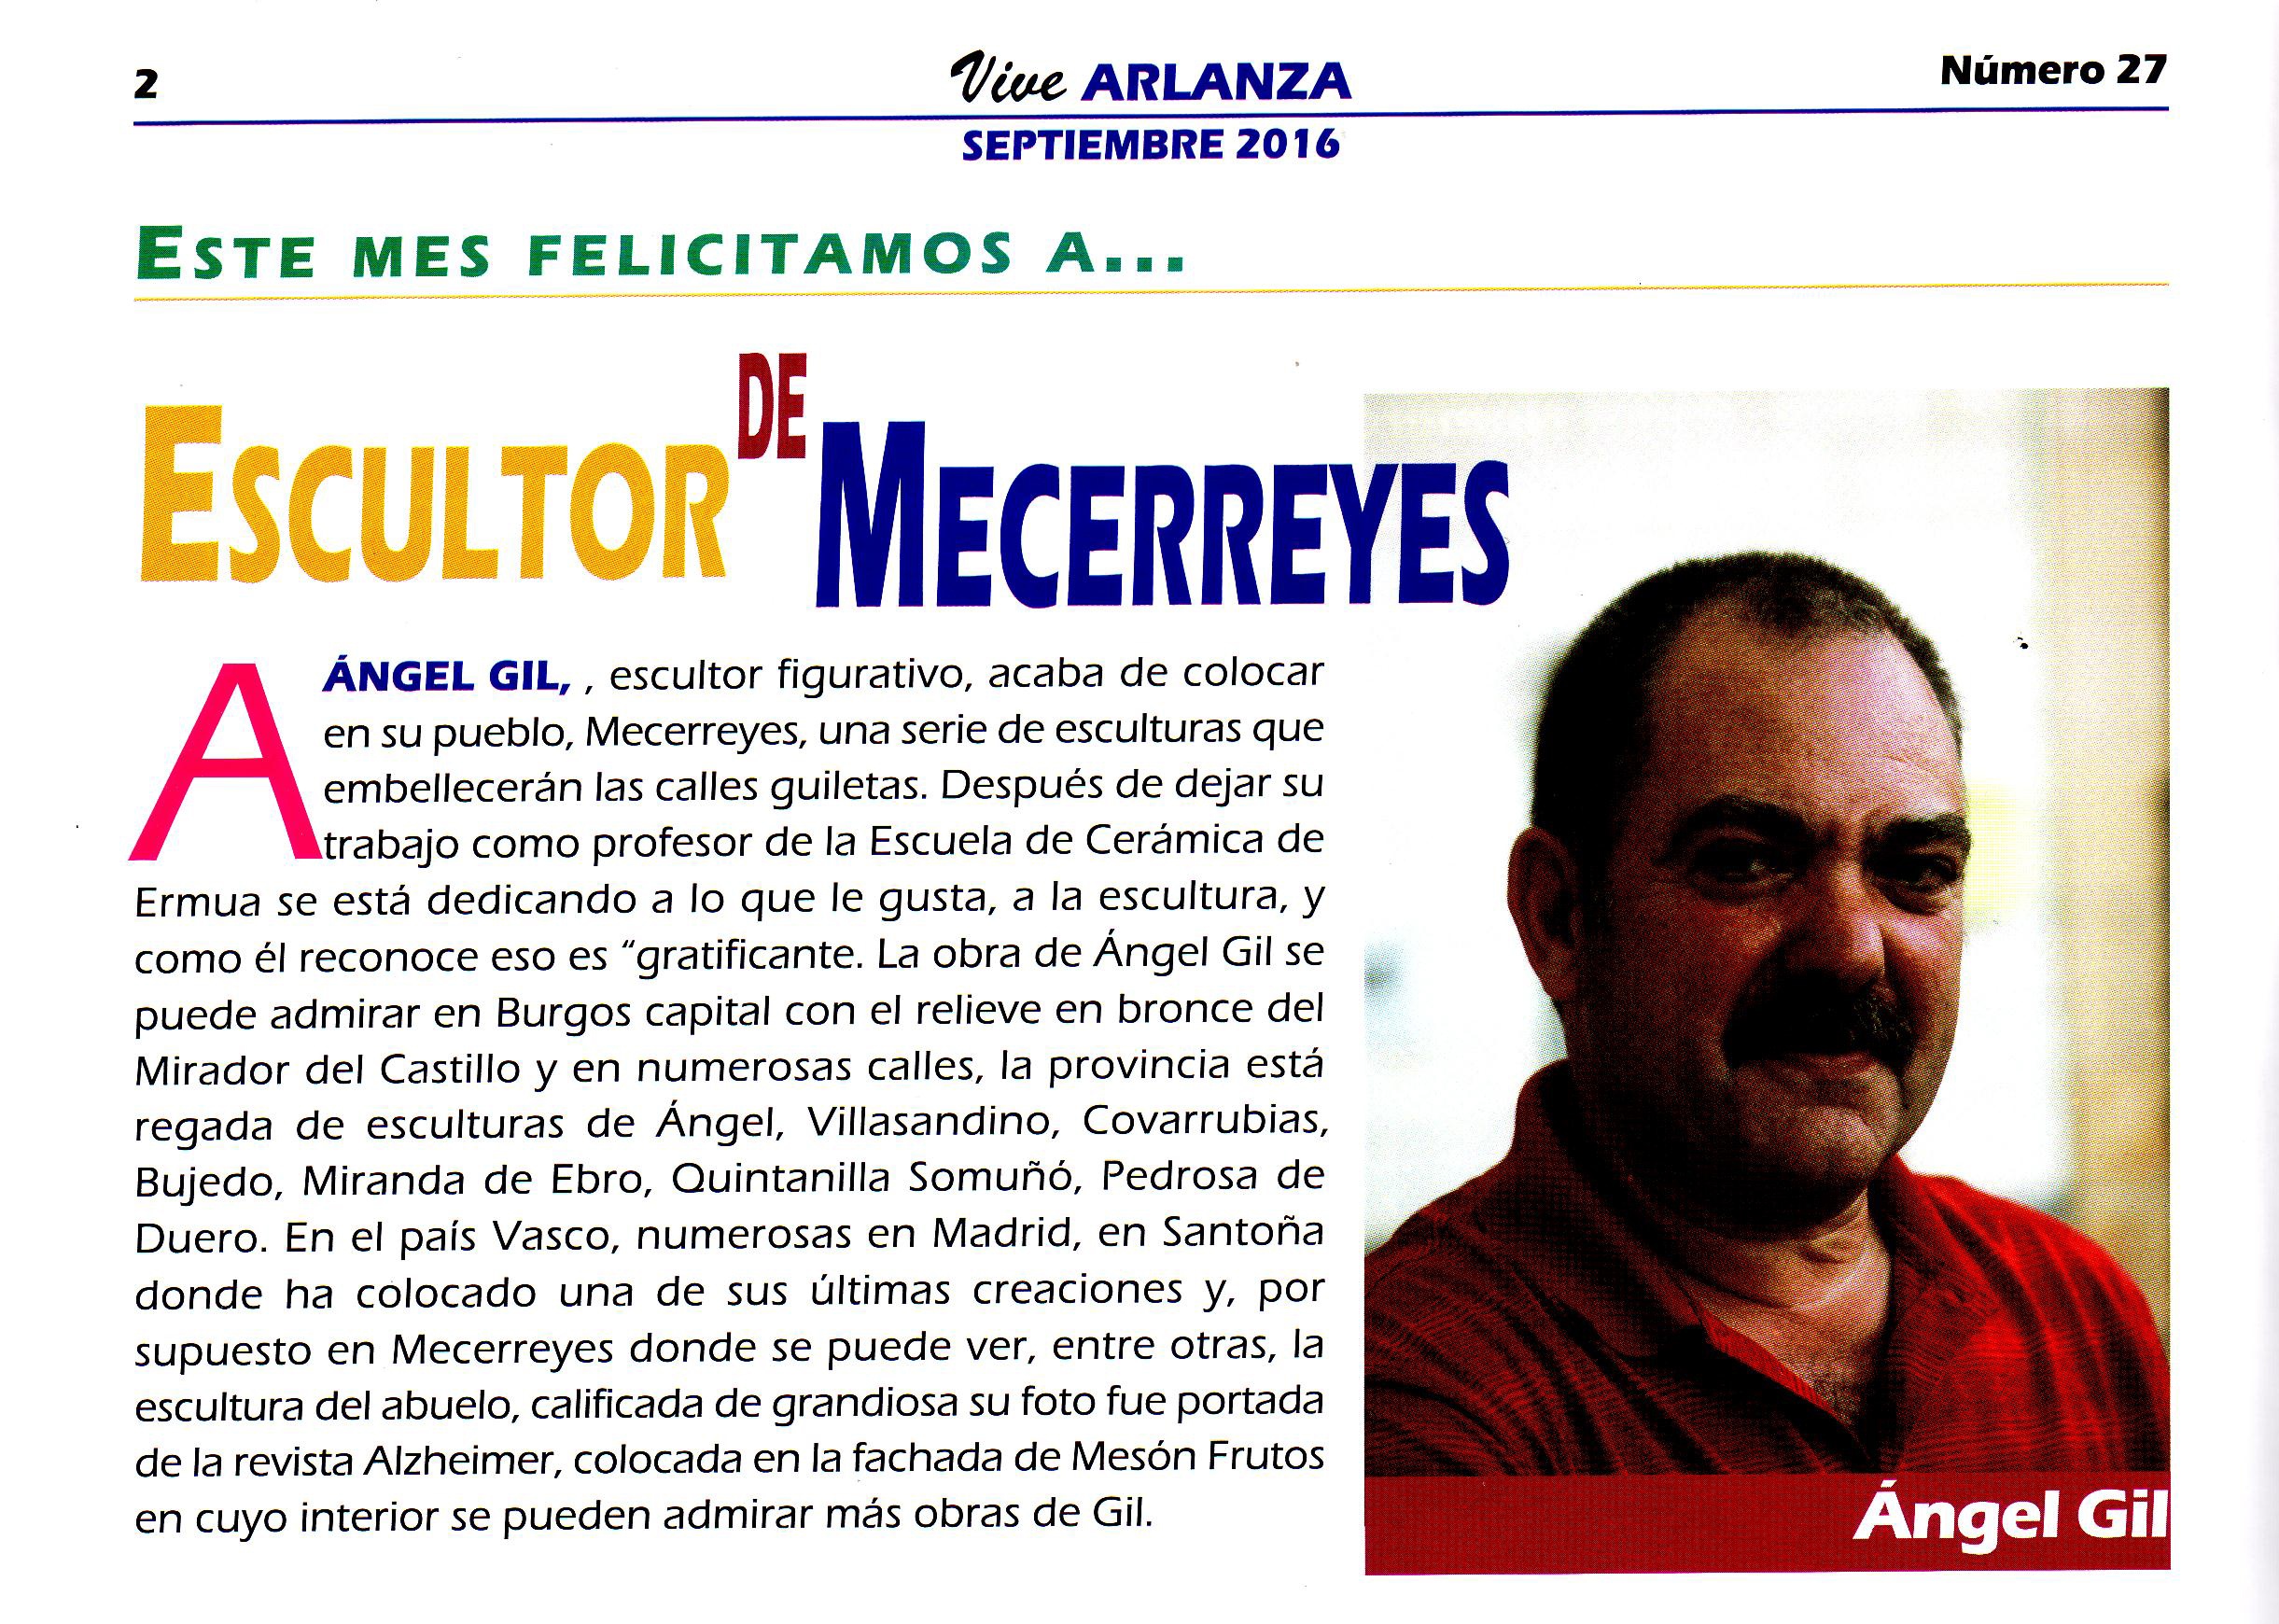 Revista Vive Arlanza - Ángel Gil, Escultor de Mecerreyes 2016